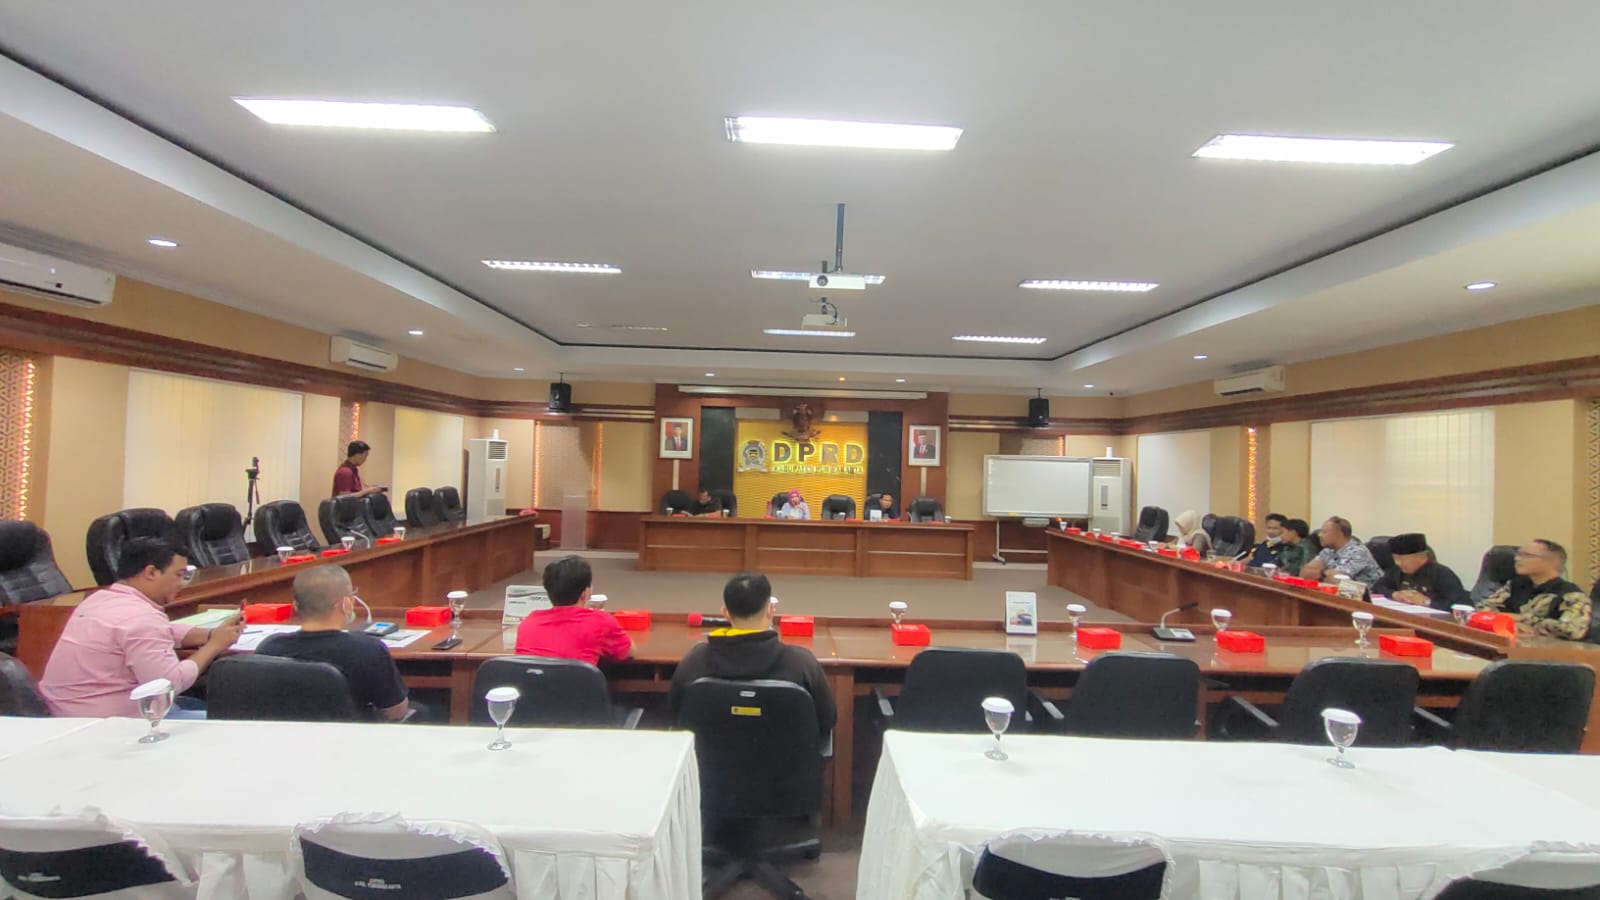 Kamis (28/07/2022) Rapat Audiensi Permasalahan Perumahan bersama Warga Perum Pesona Jati Indah dan Anggota DPRD Komisi III Kab. Purwakarta